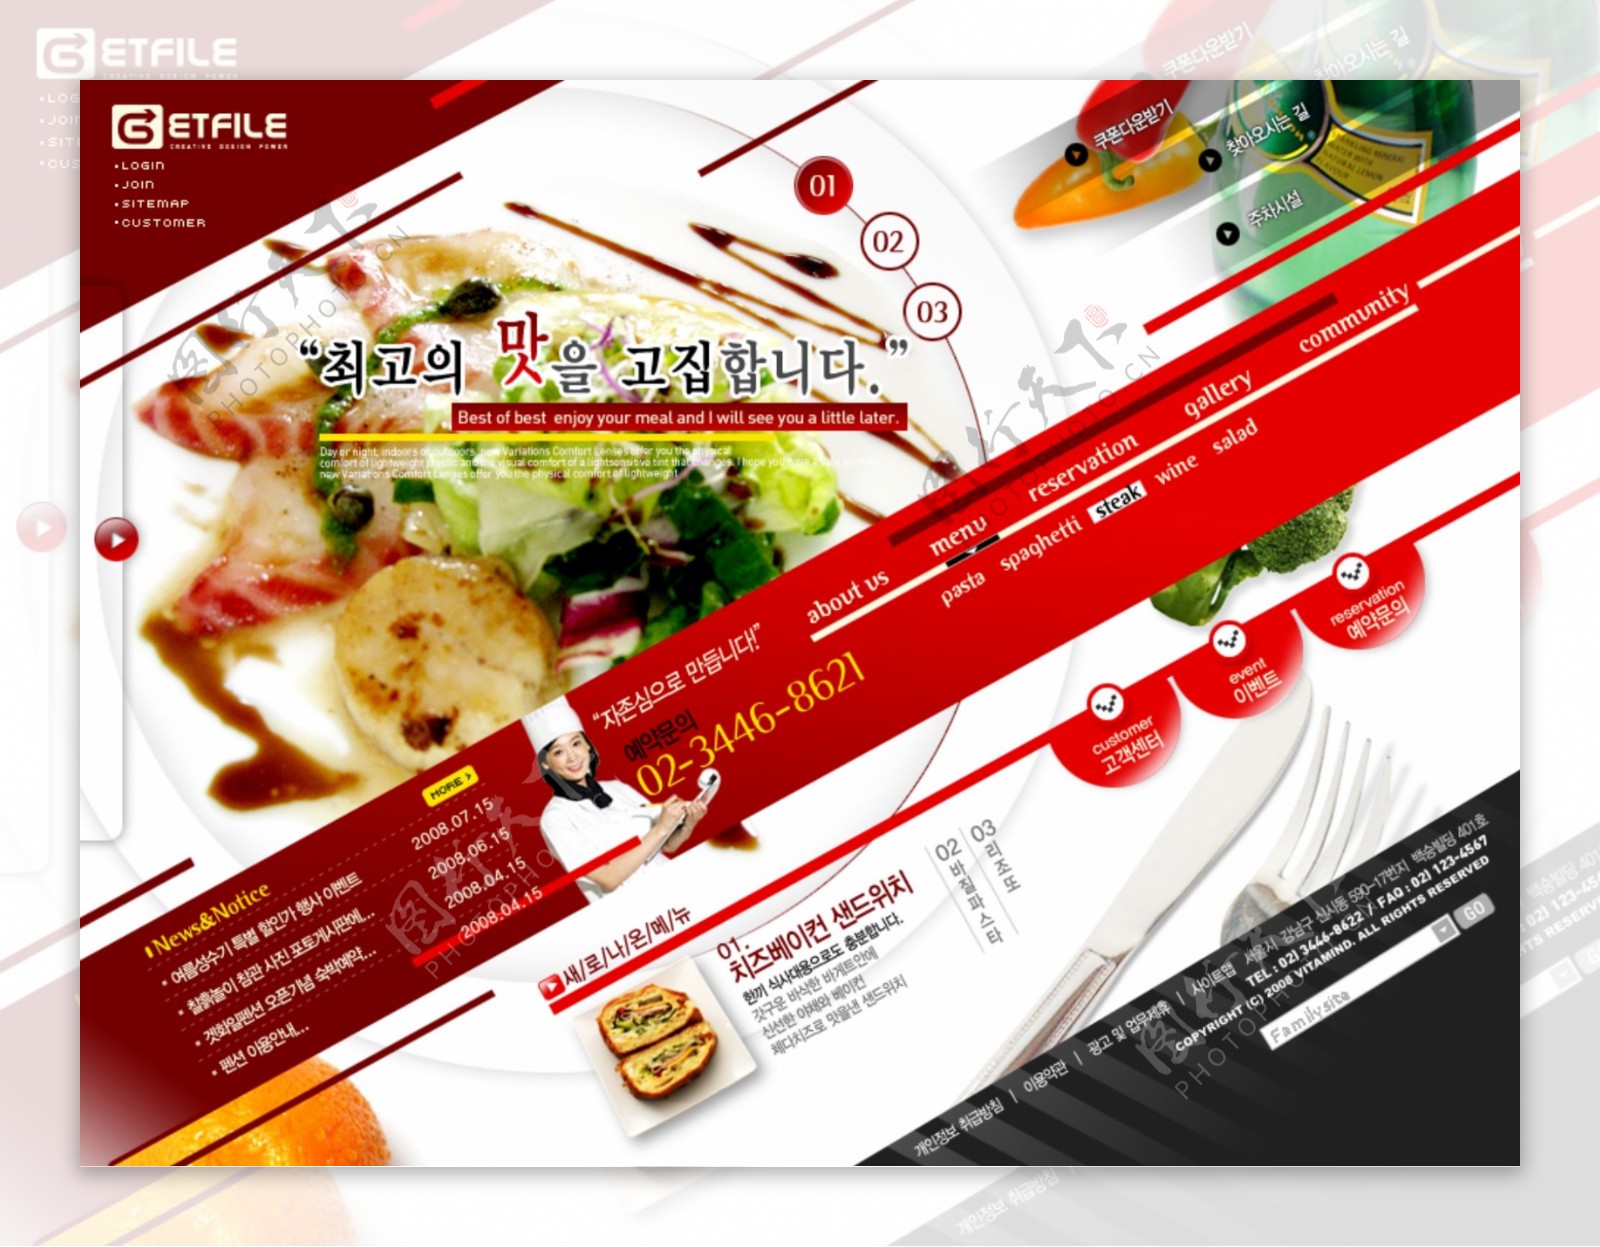 餐饮行业网站psd设计模板下载